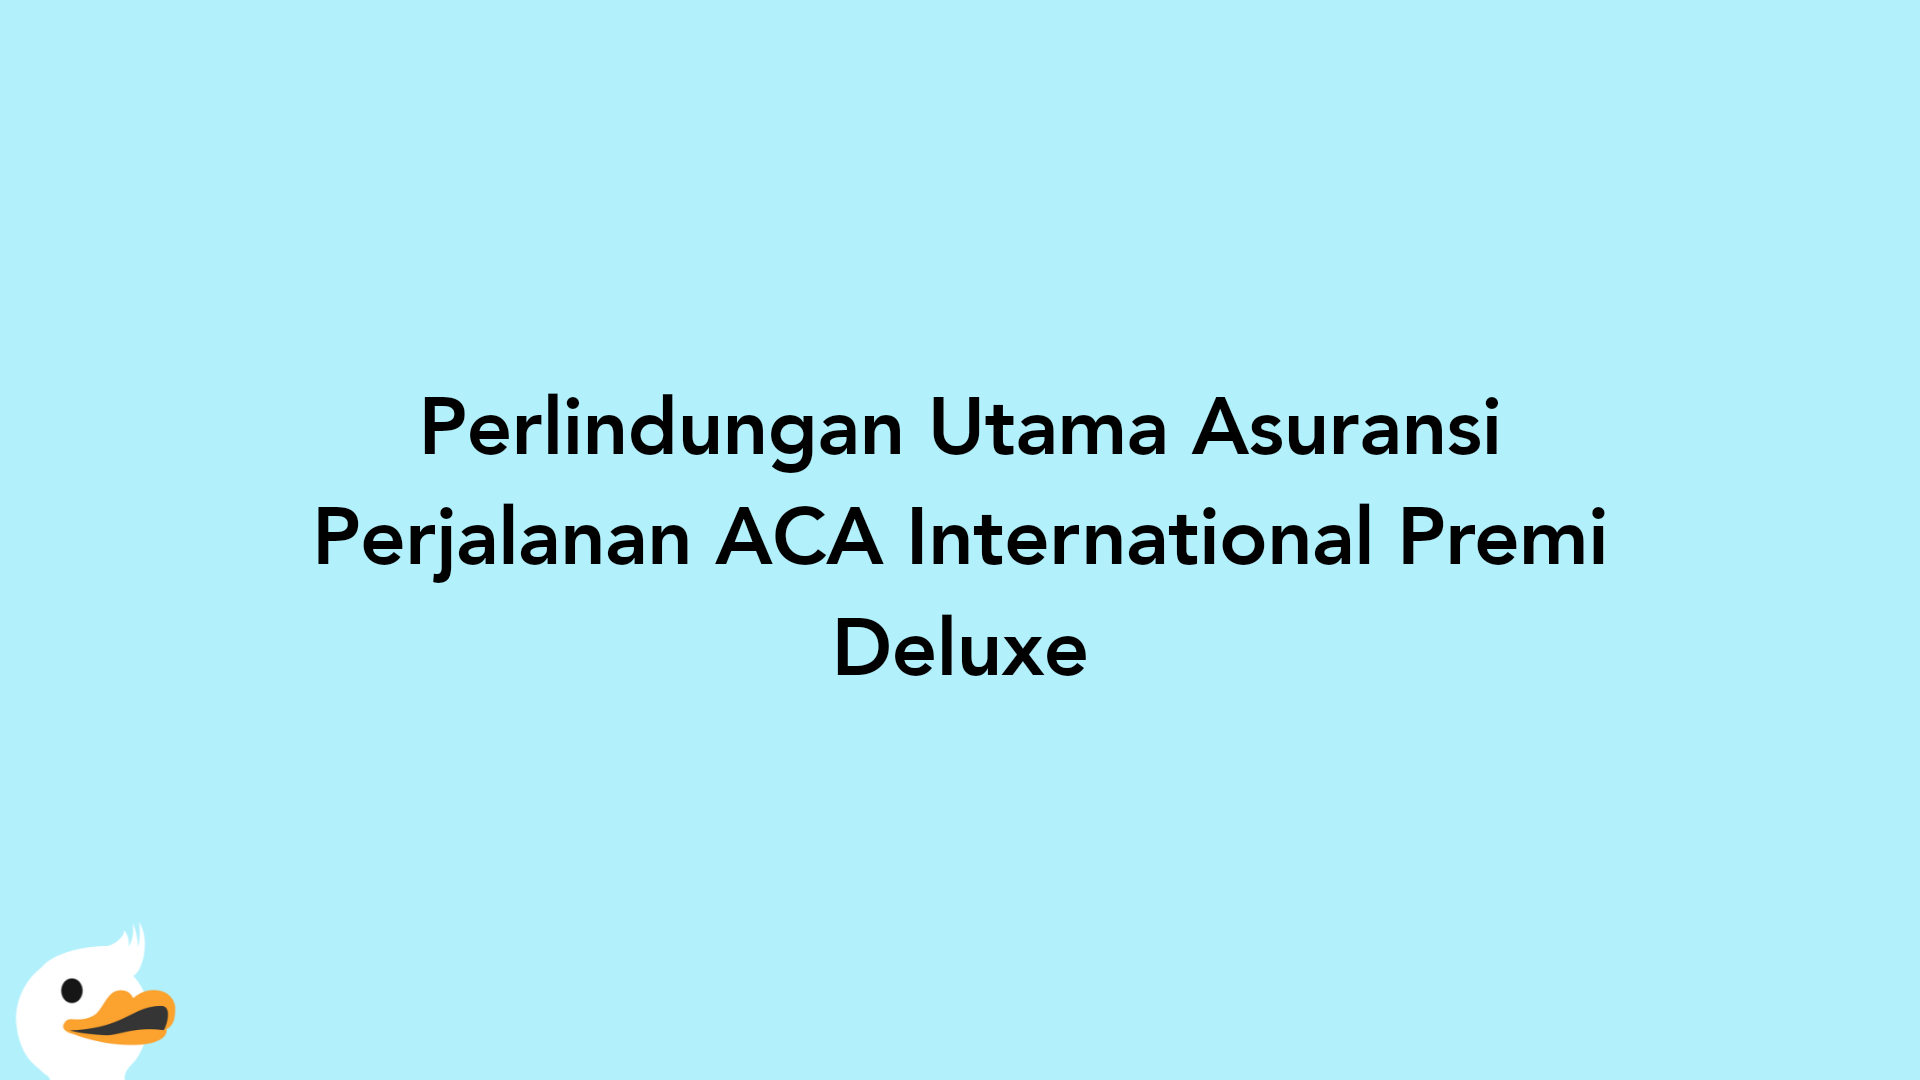 Perlindungan Utama Asuransi Perjalanan ACA International Premi Deluxe